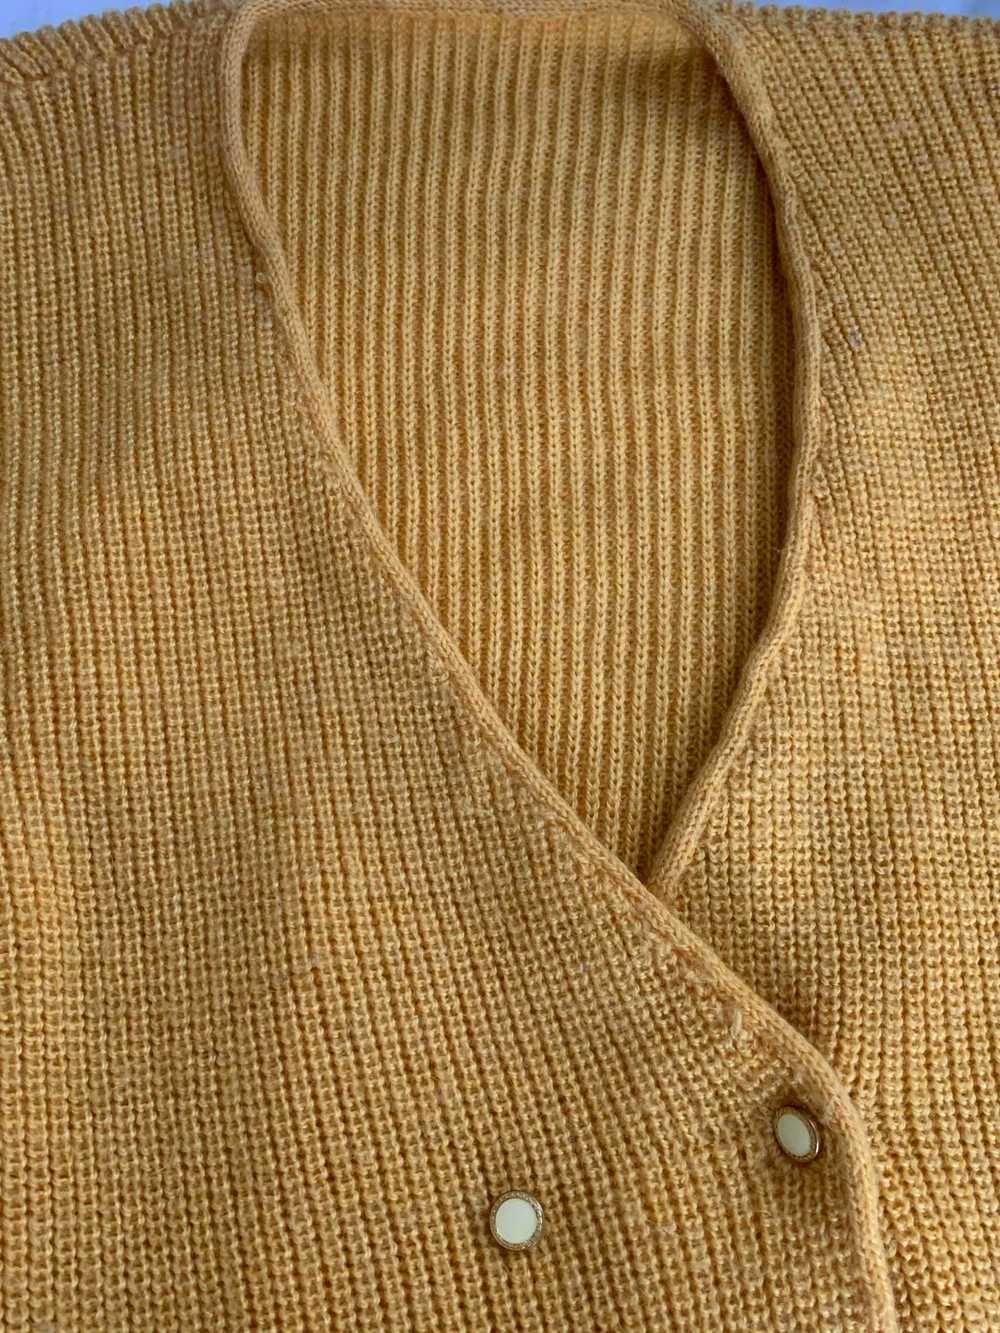 Cardigan en crochet - Cardigan en crochet jaune - image 3